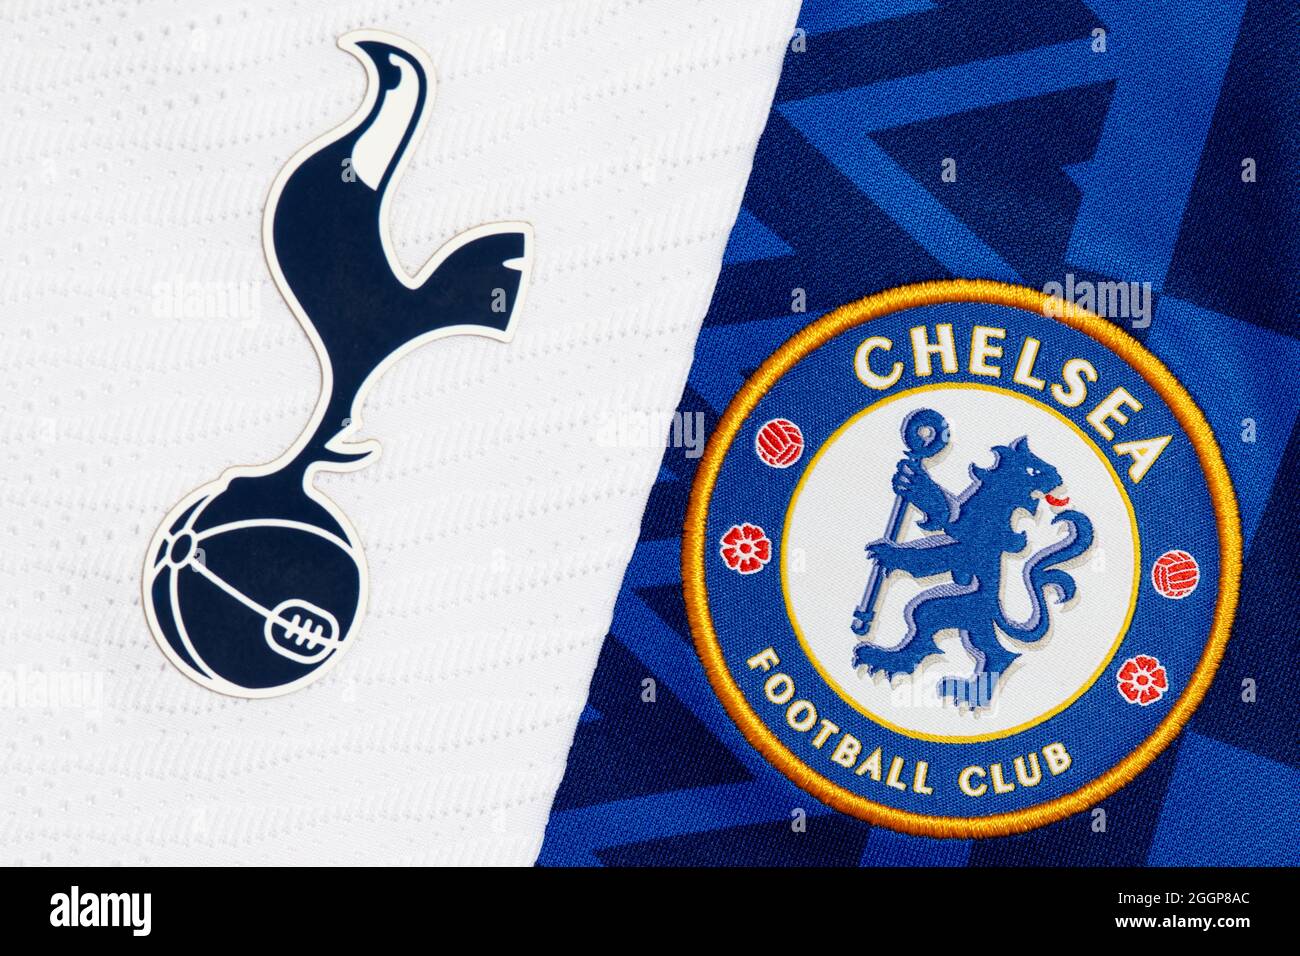 Close up of Tottenham Hotspur & Chelsea club crest. Stock Photo